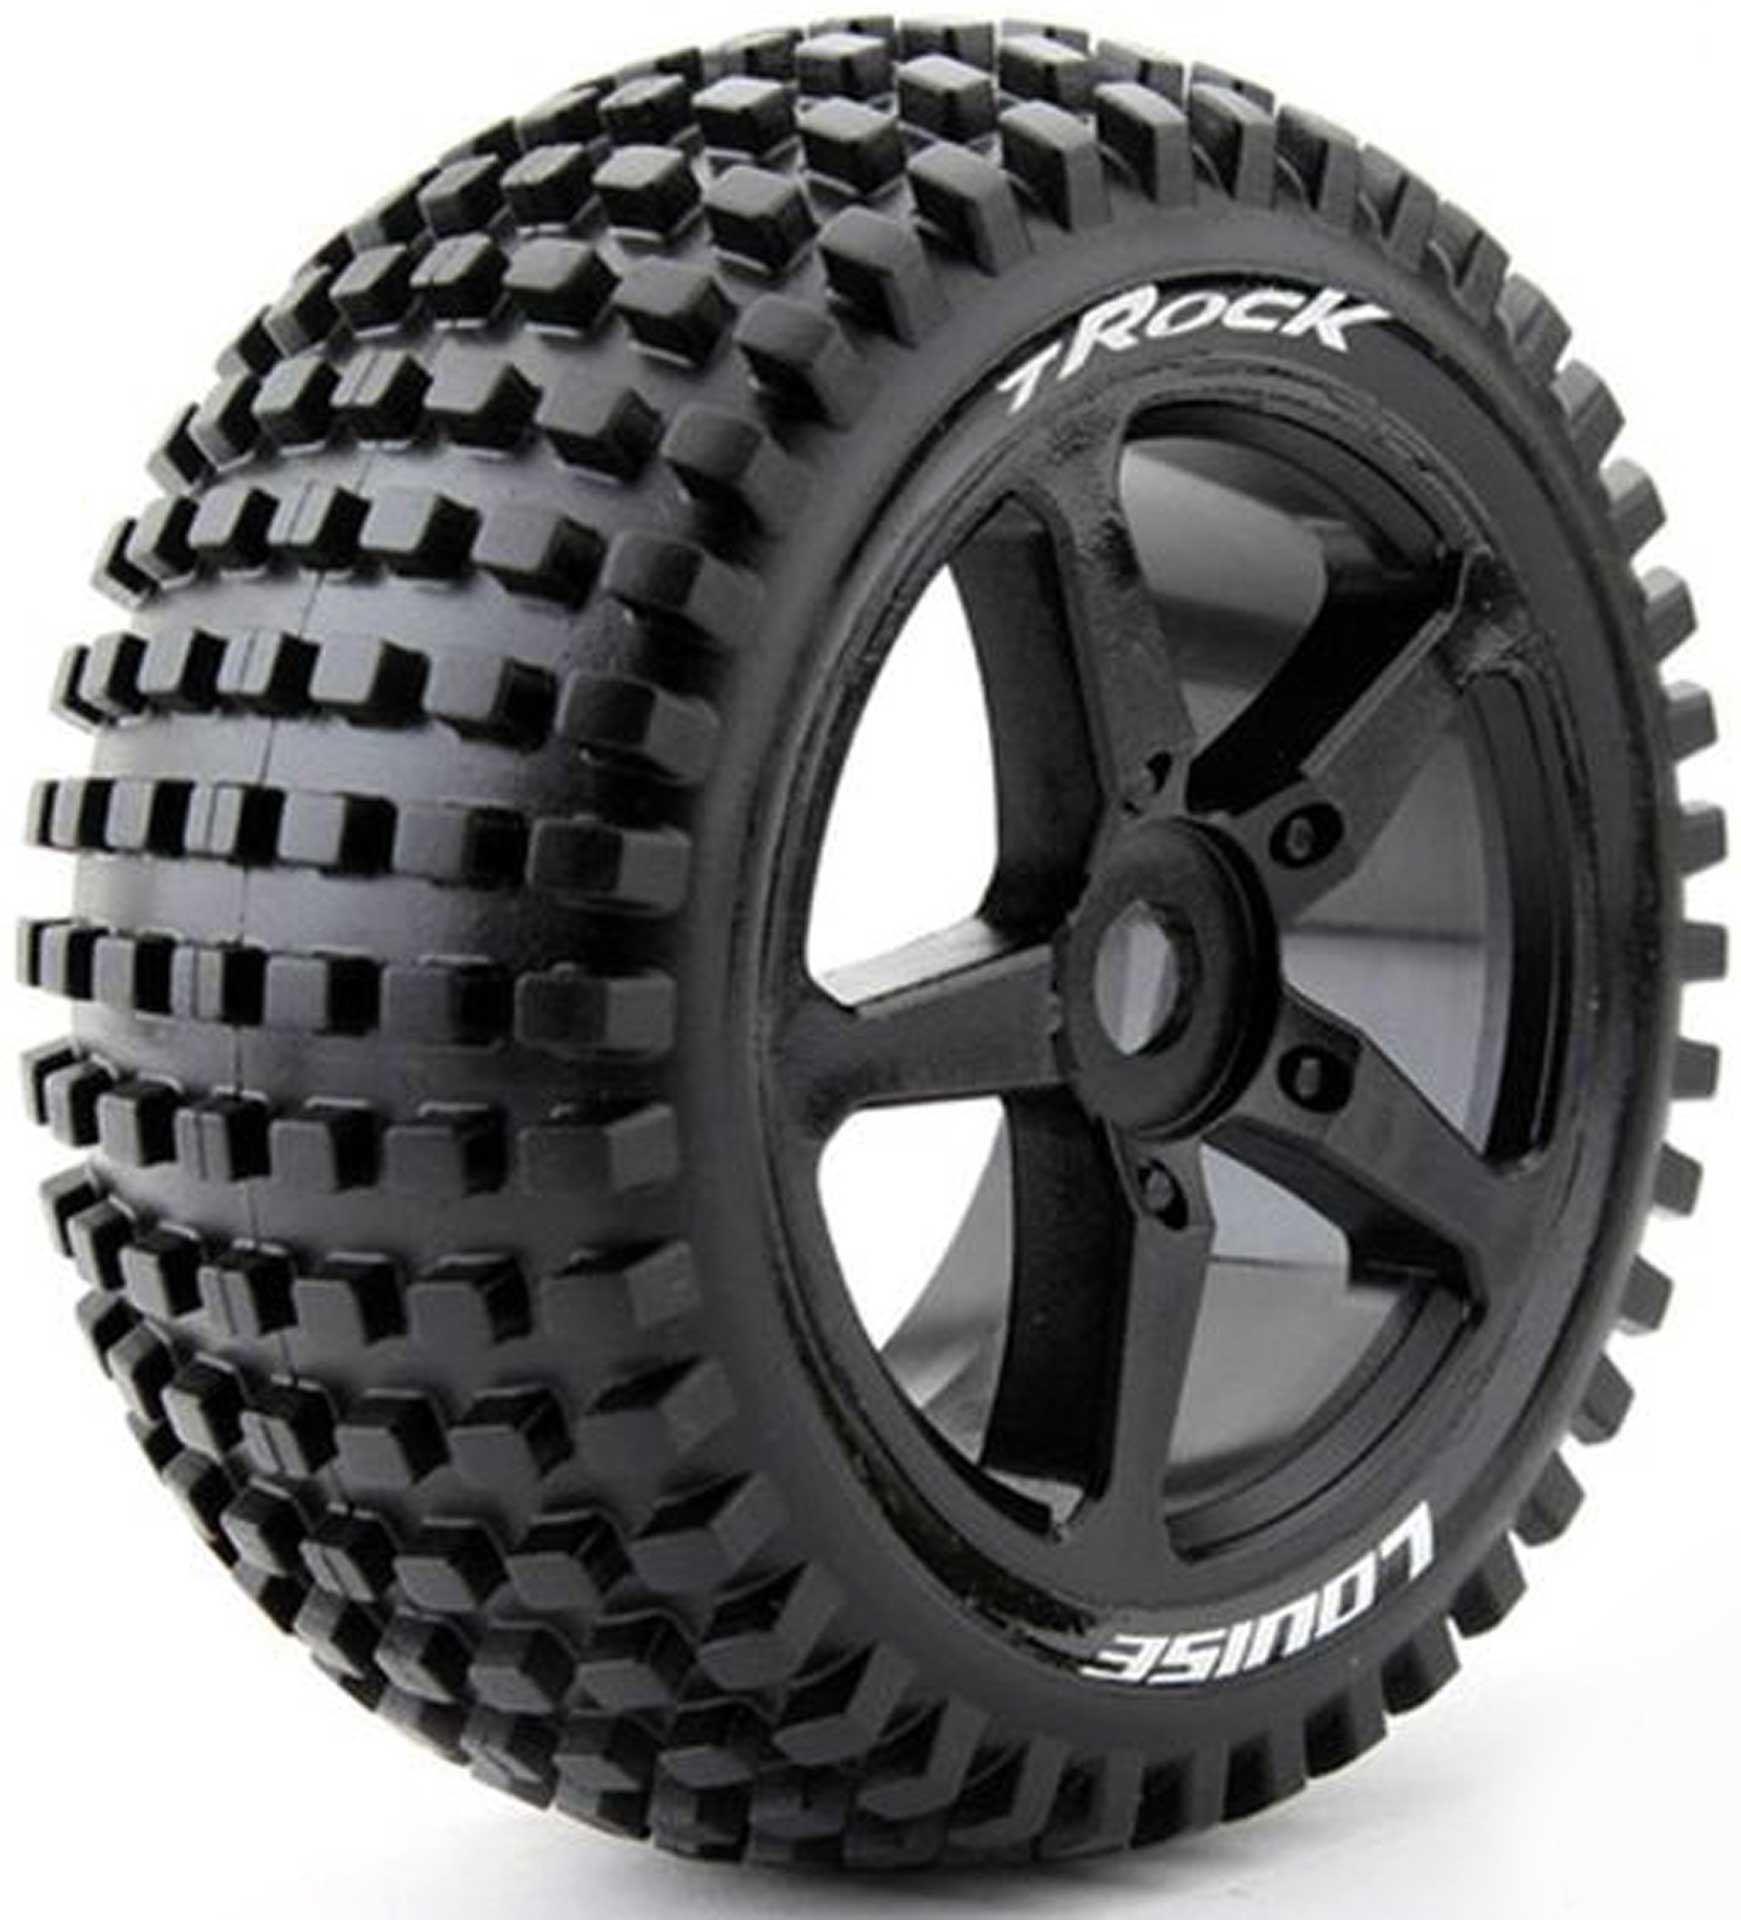 LOUISE T-Rock Reifen medium-soft auf Felge schwarz 17mm (2)